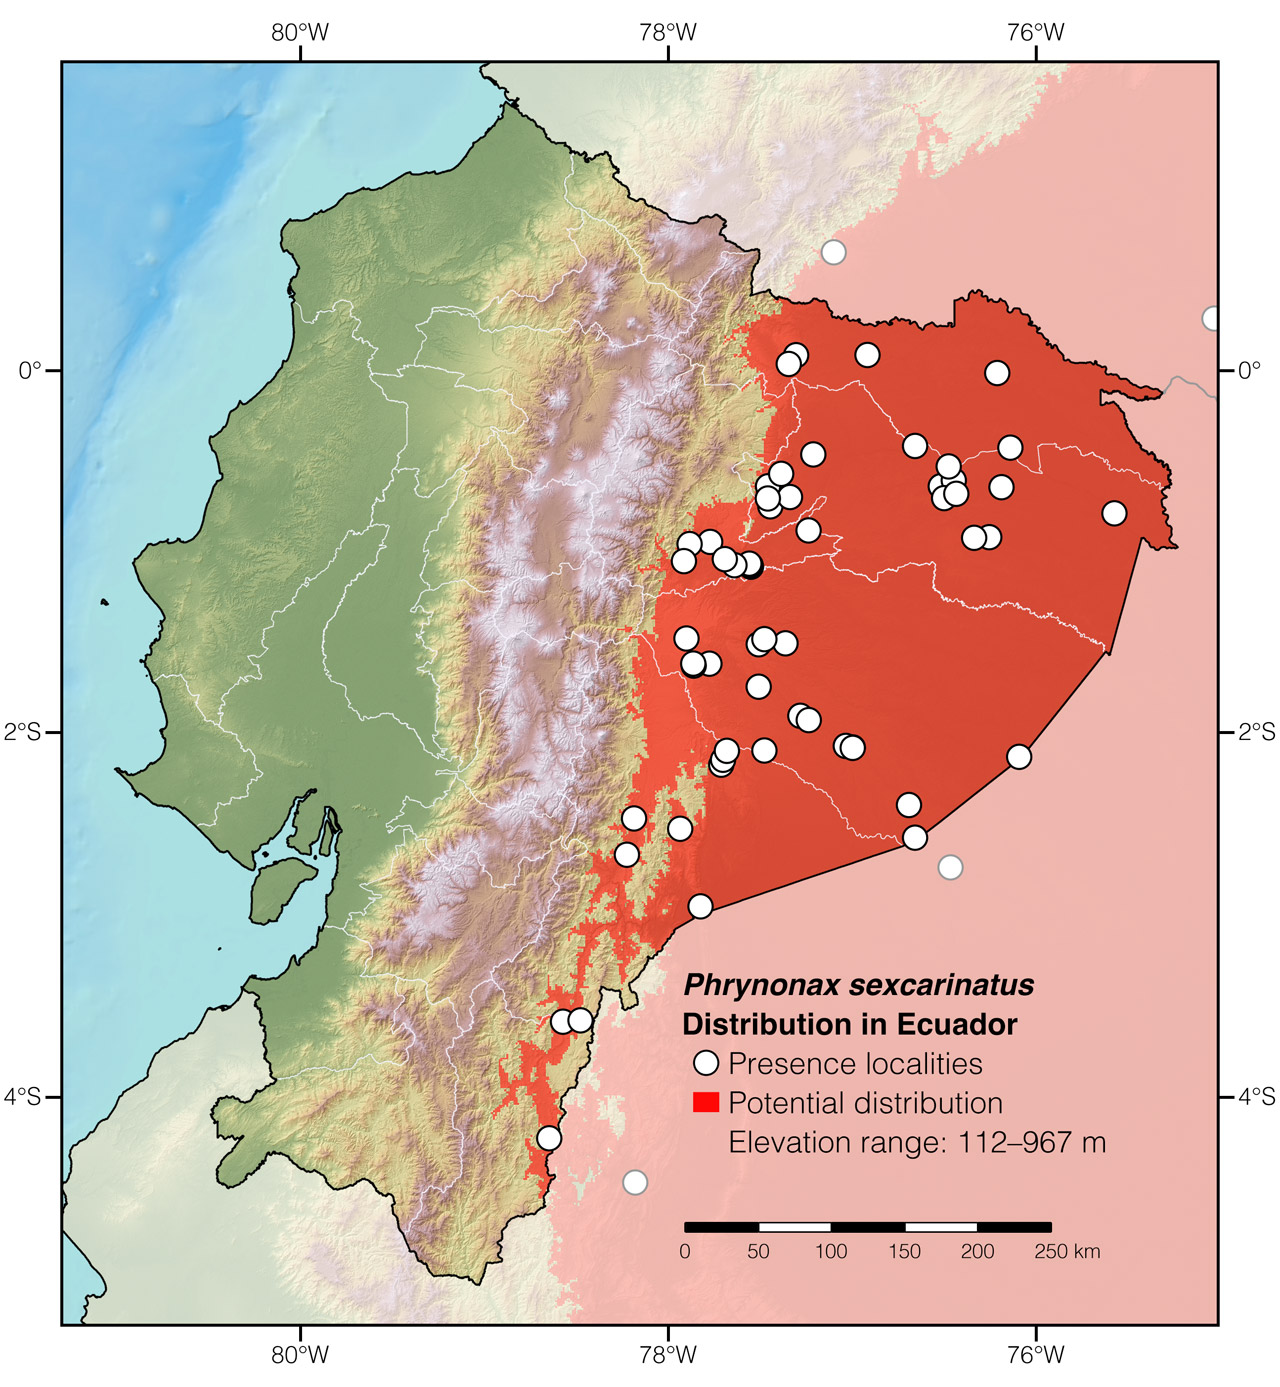 Distribution of Phrynonax sexcarinatus in Ecuador